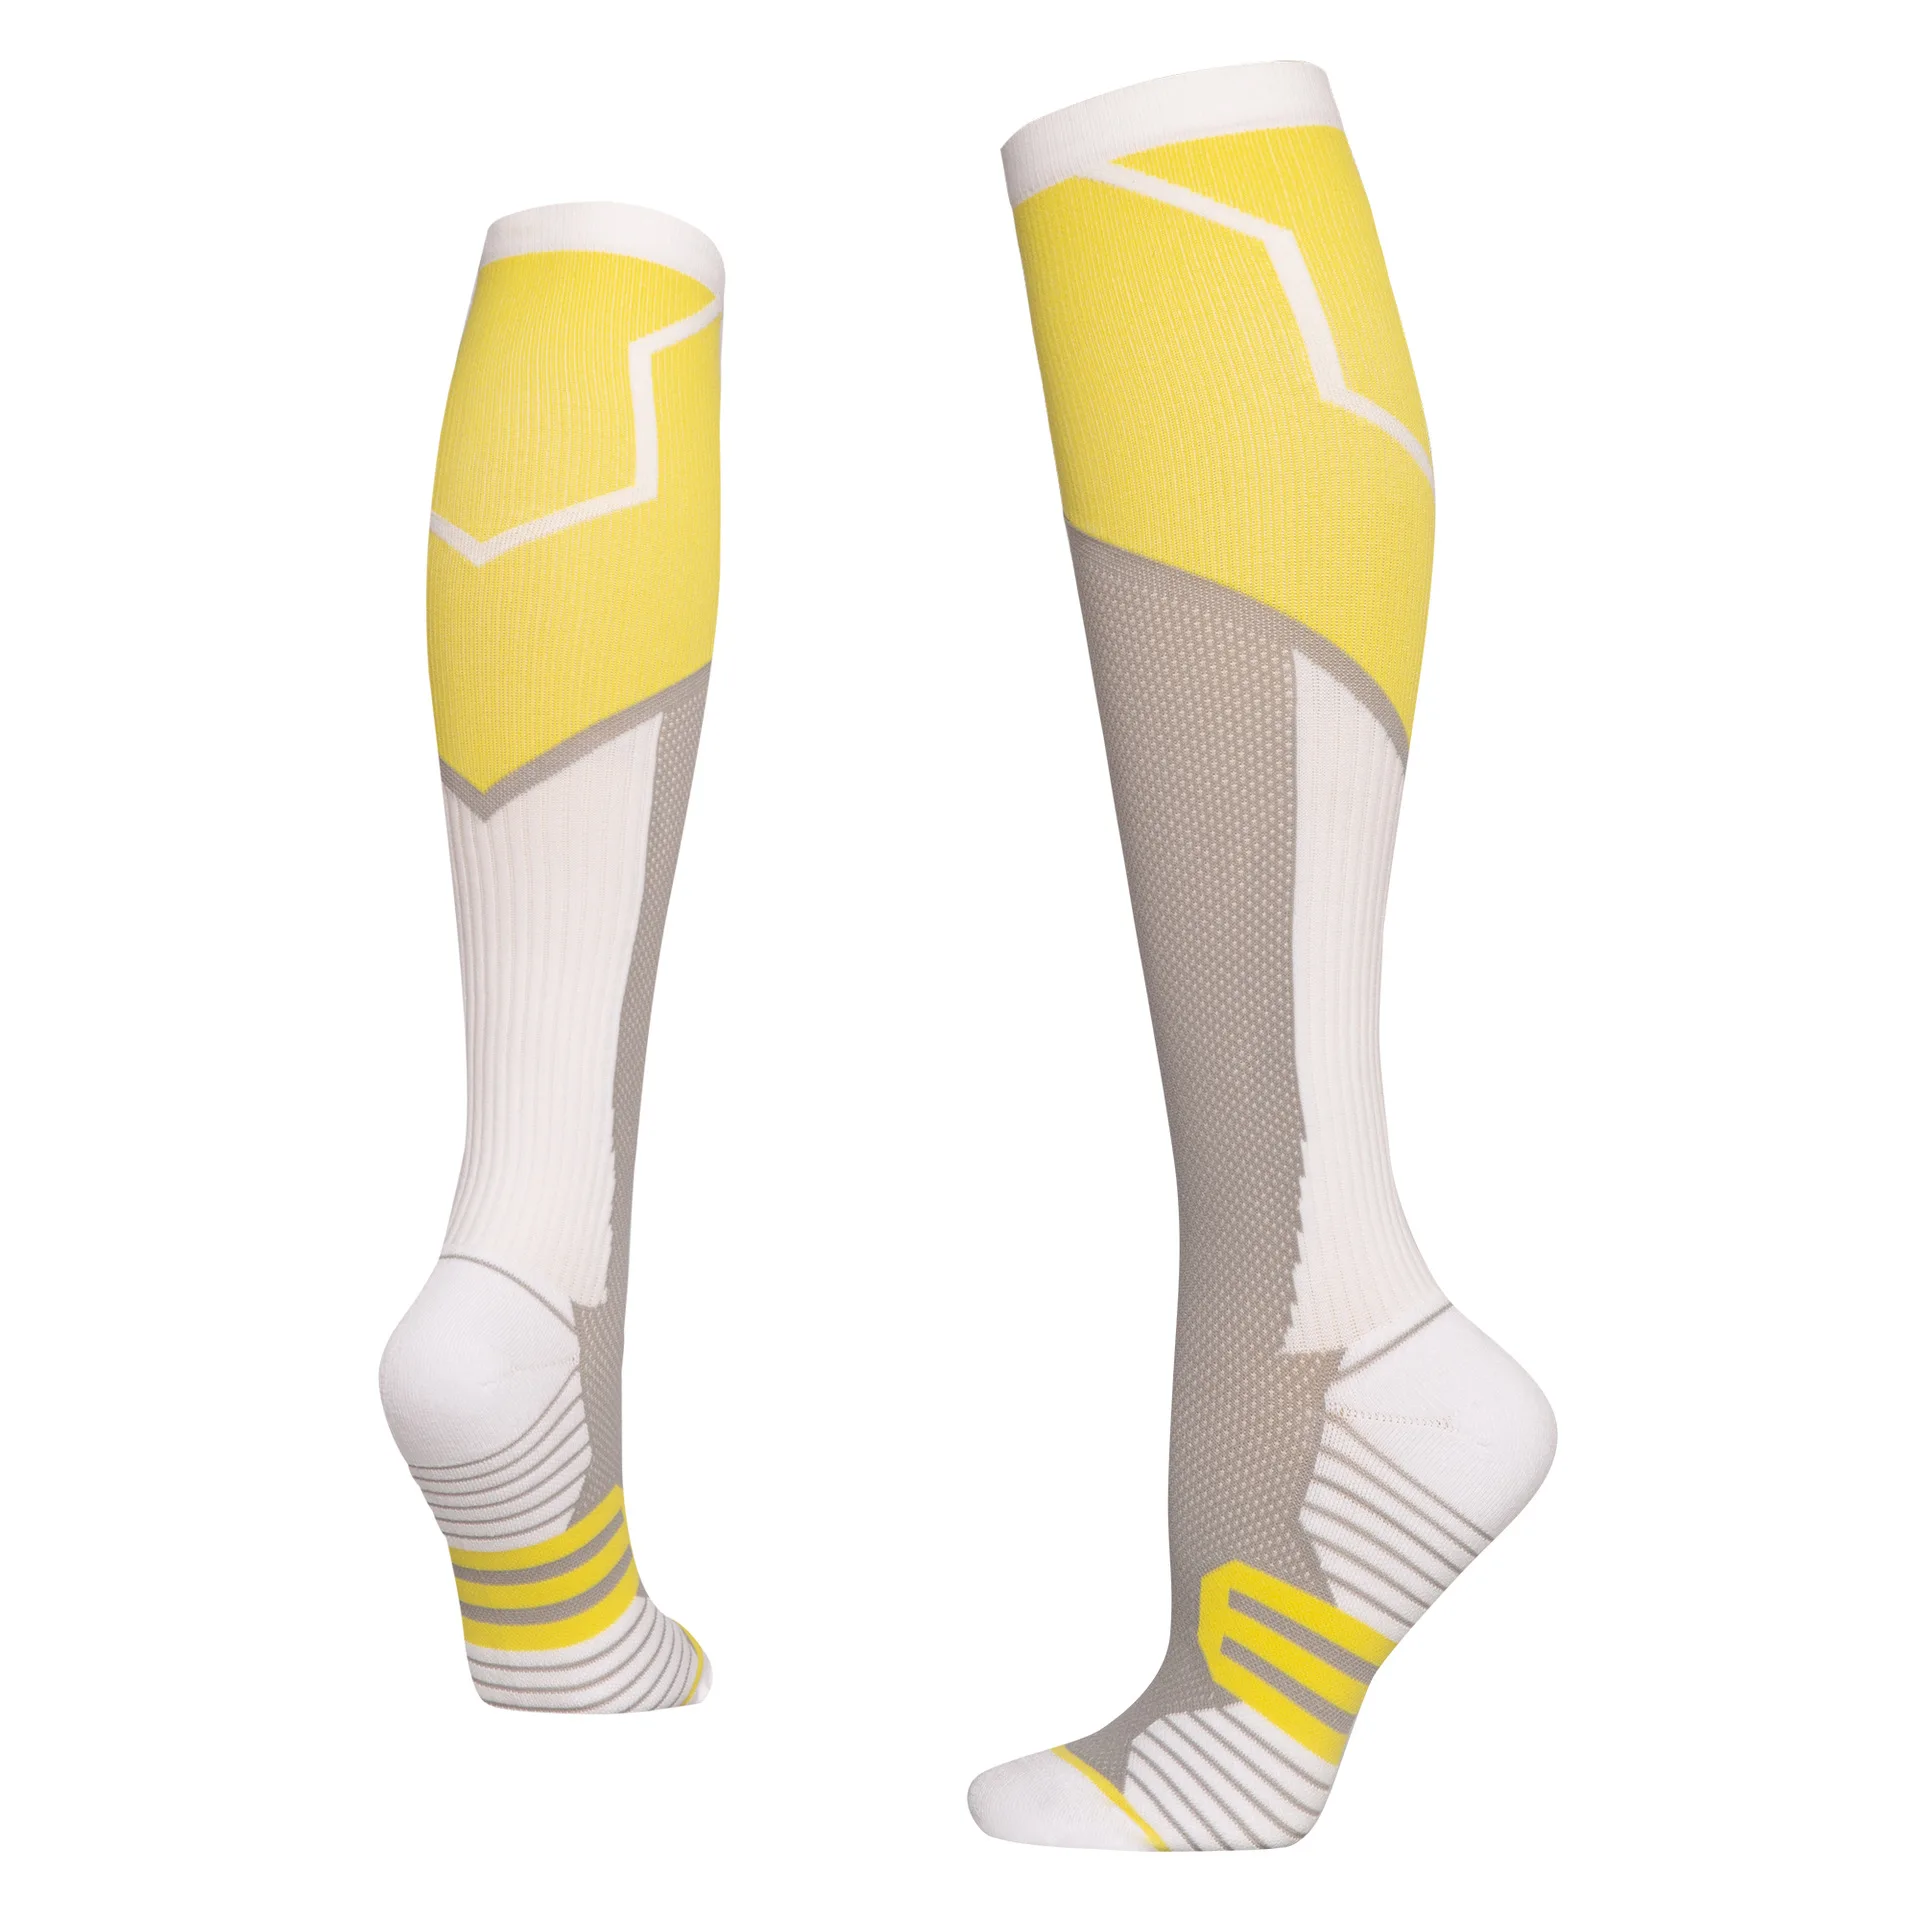 Elastik Spor Sıkıştırma diz üstü çorap Erkekler ve Kadınlar için, Buzağı Kollu Atlama İpi Spor, Açık Hava Etkinlikleri